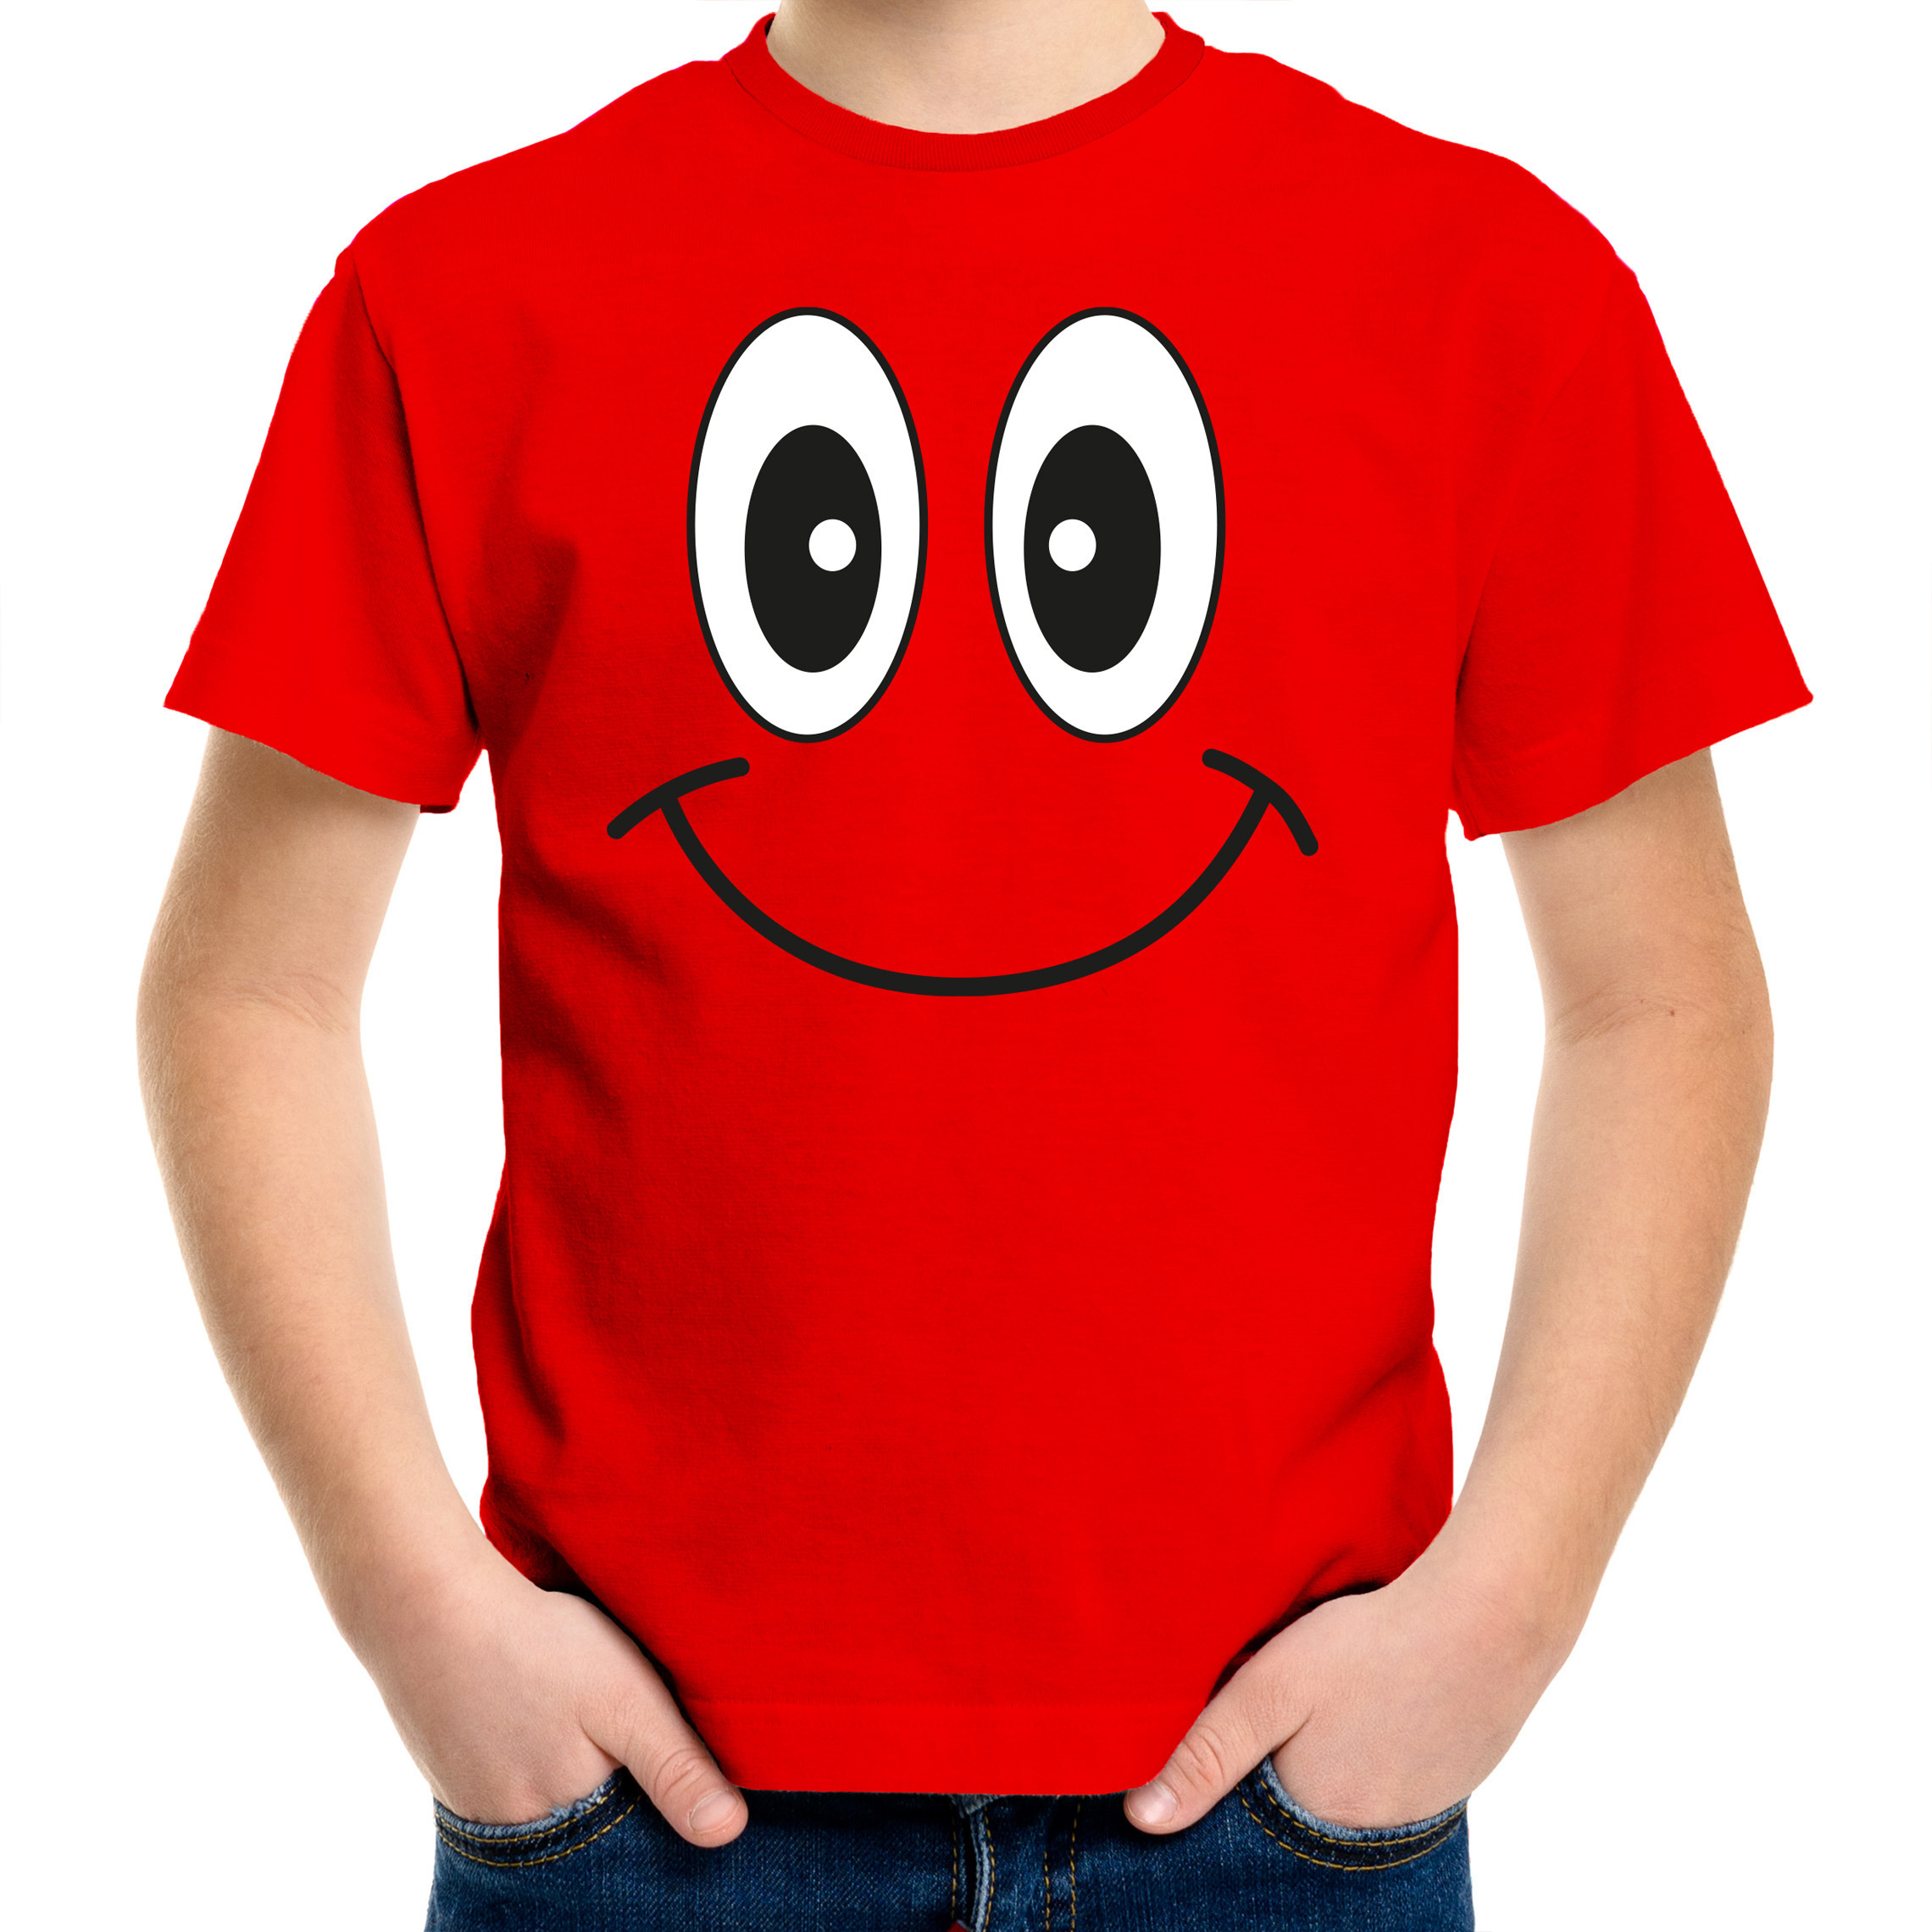 Verkleed t-shirt voor kinderen-jongens smiley rood feestkleding